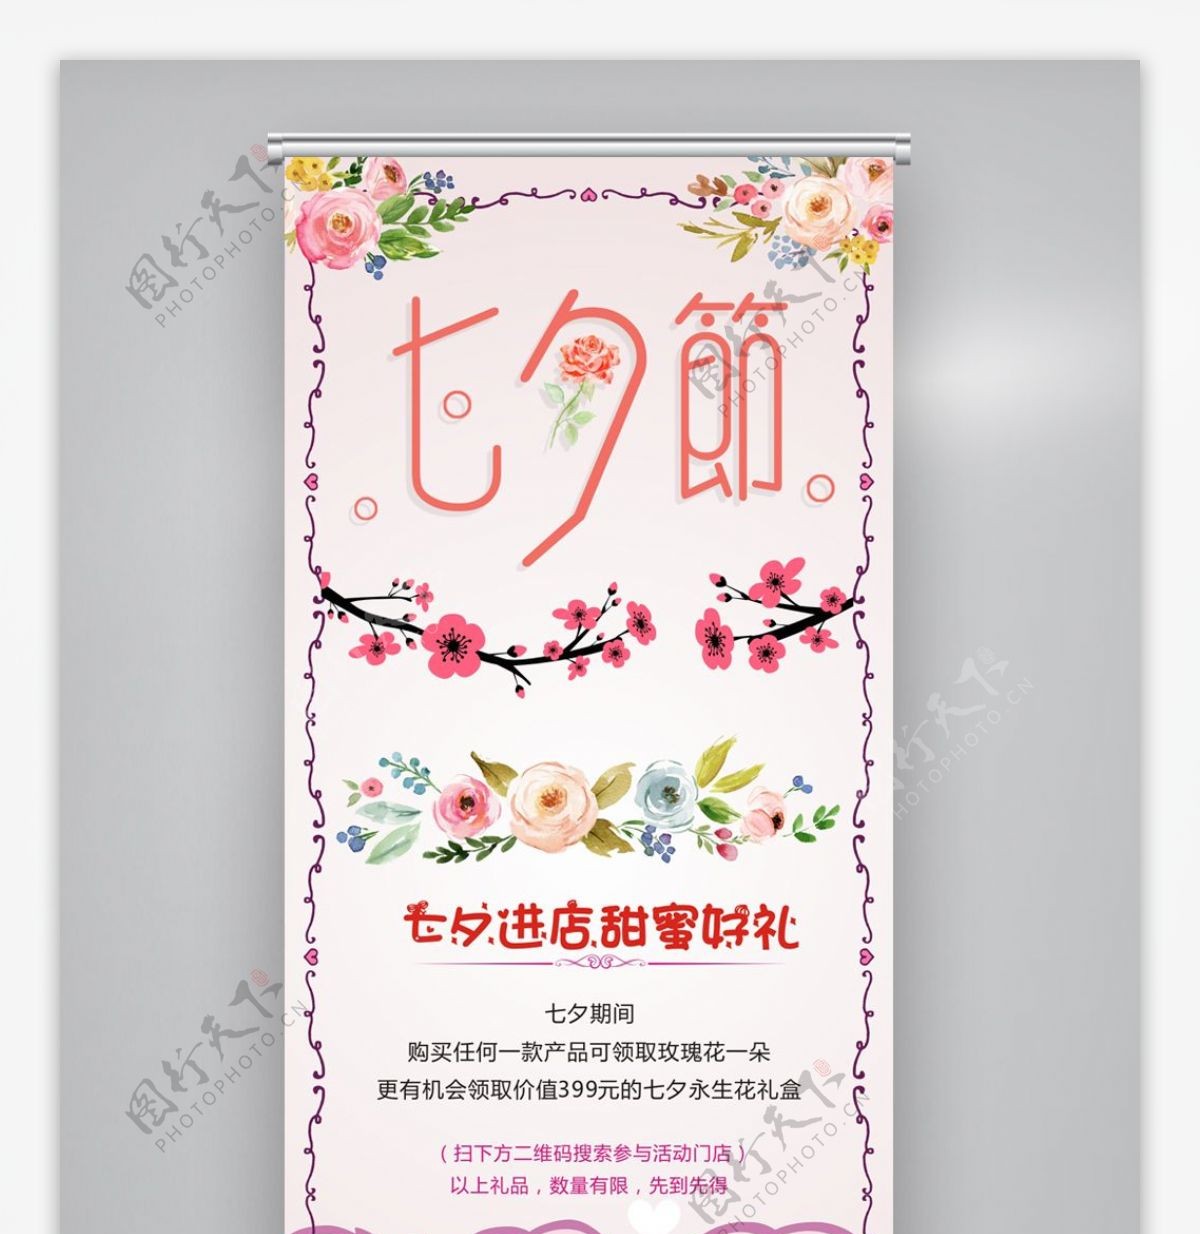 中国七夕情人节促销展架易拉宝设计